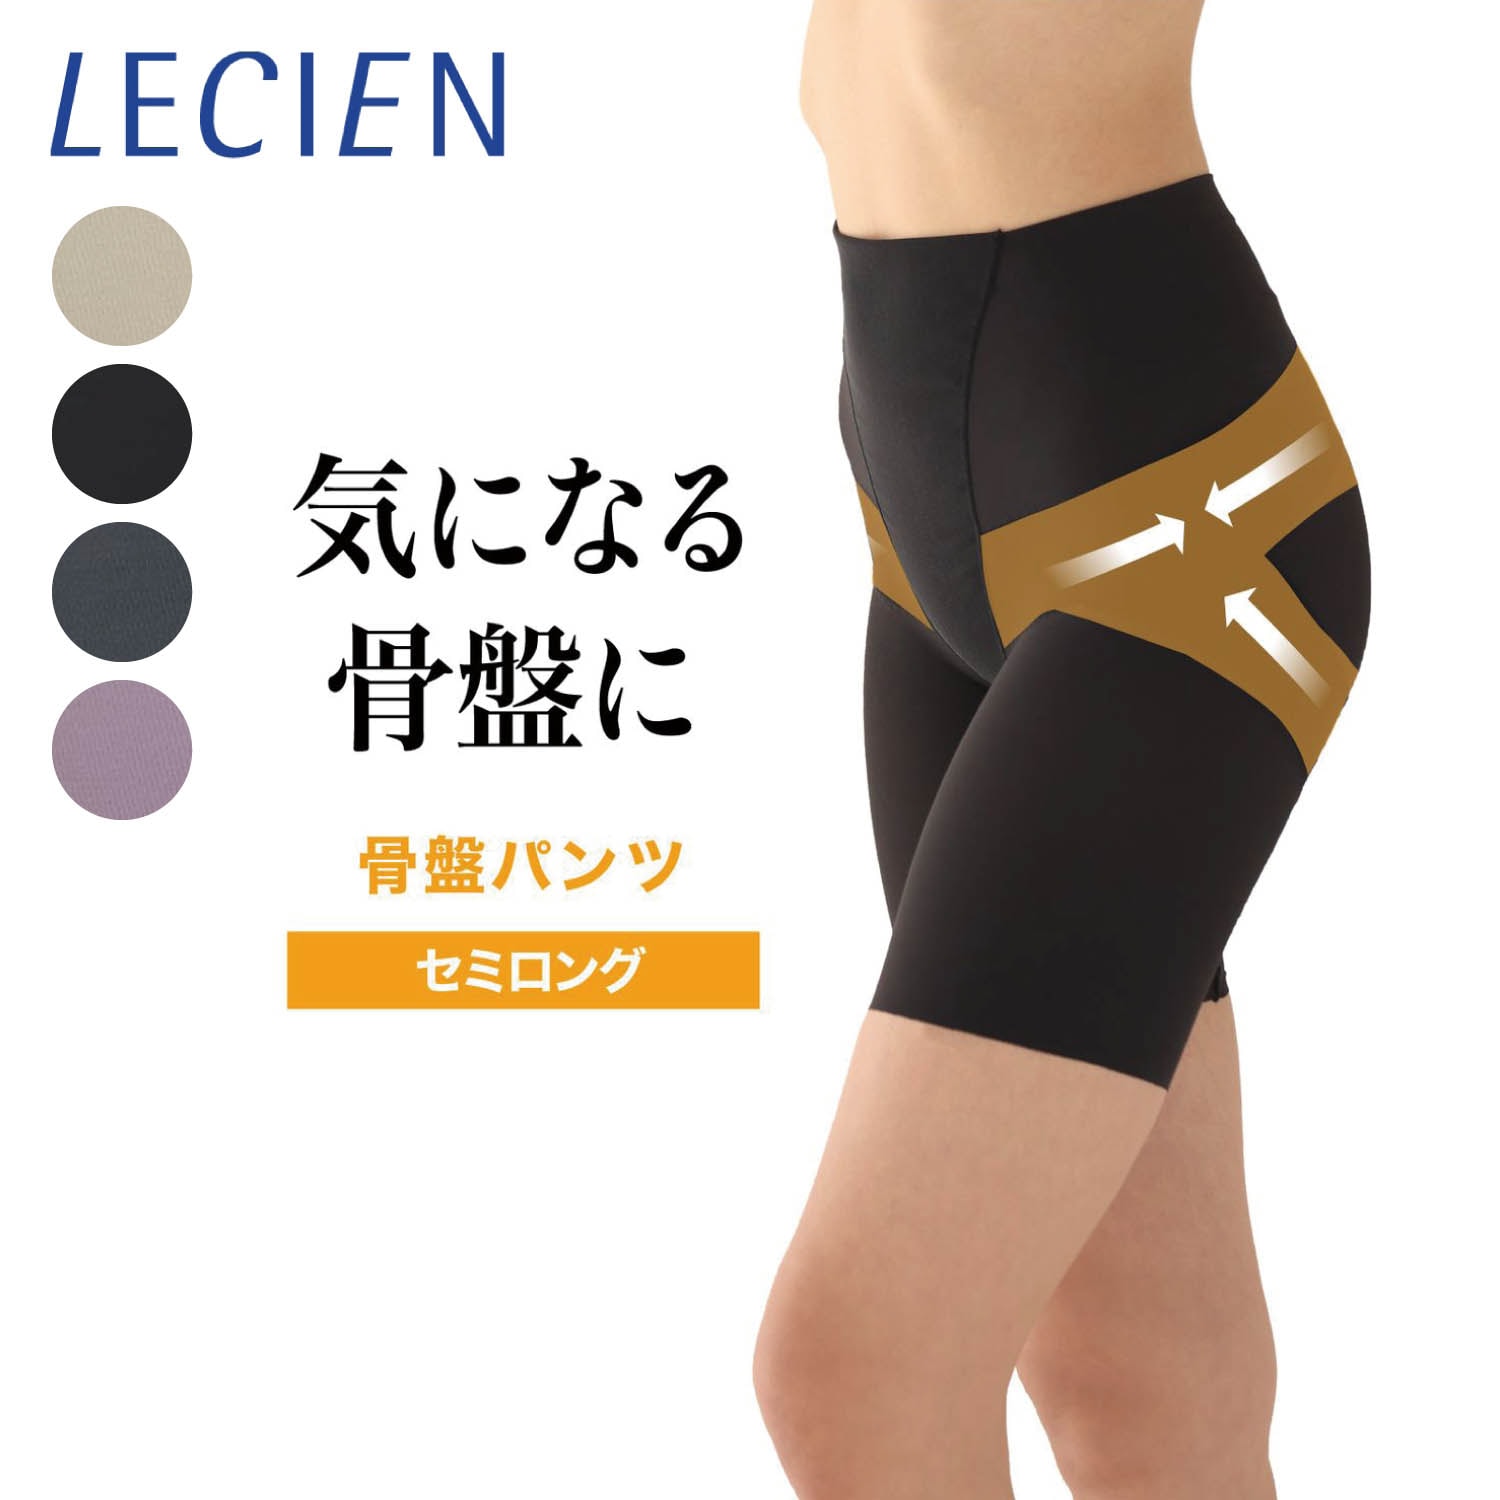 【ルシアン/LECIEN】骨盤パンツ セミロング丈(1枚ばき可) 【足口ヘム】